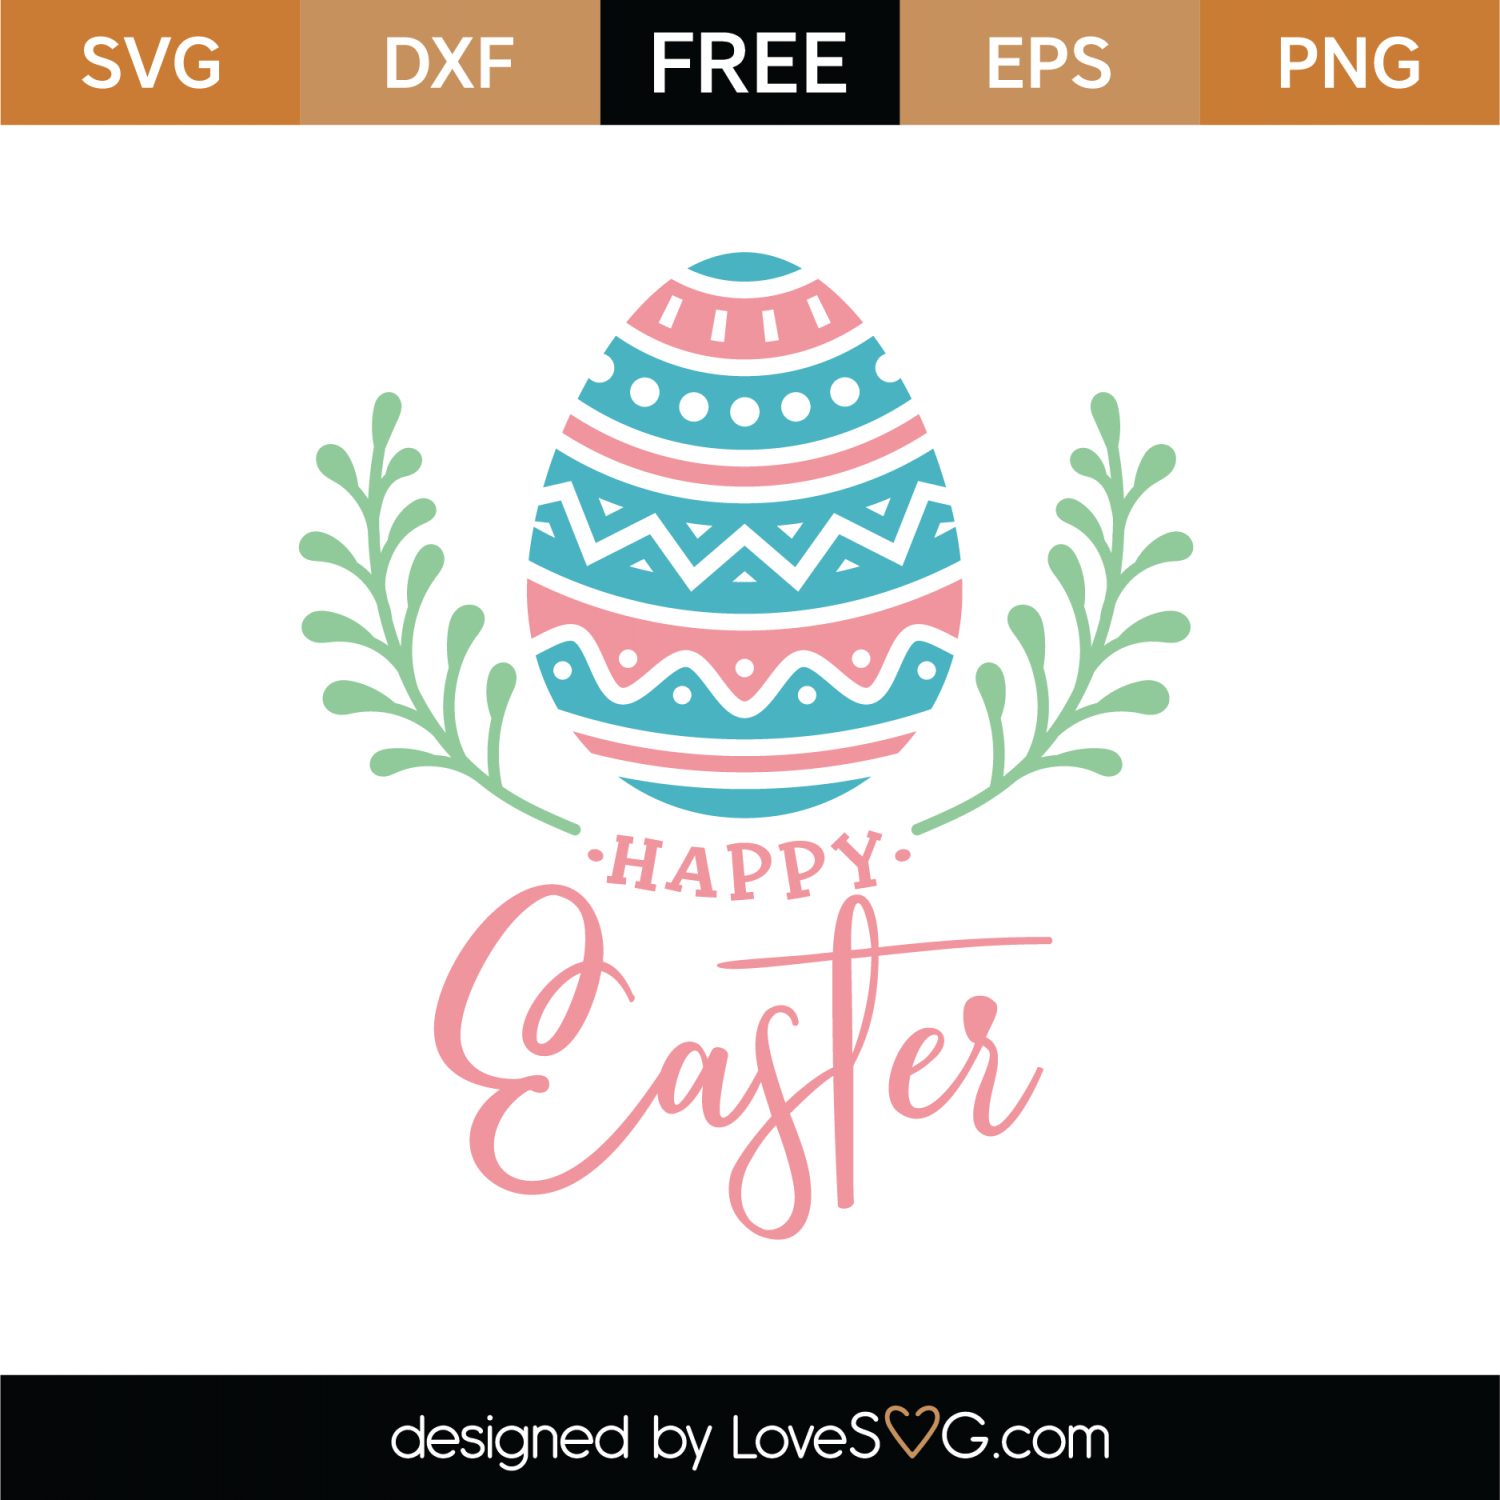 Free Happy Easter Egg Laurel SVG Cut File | Lovesvg.com